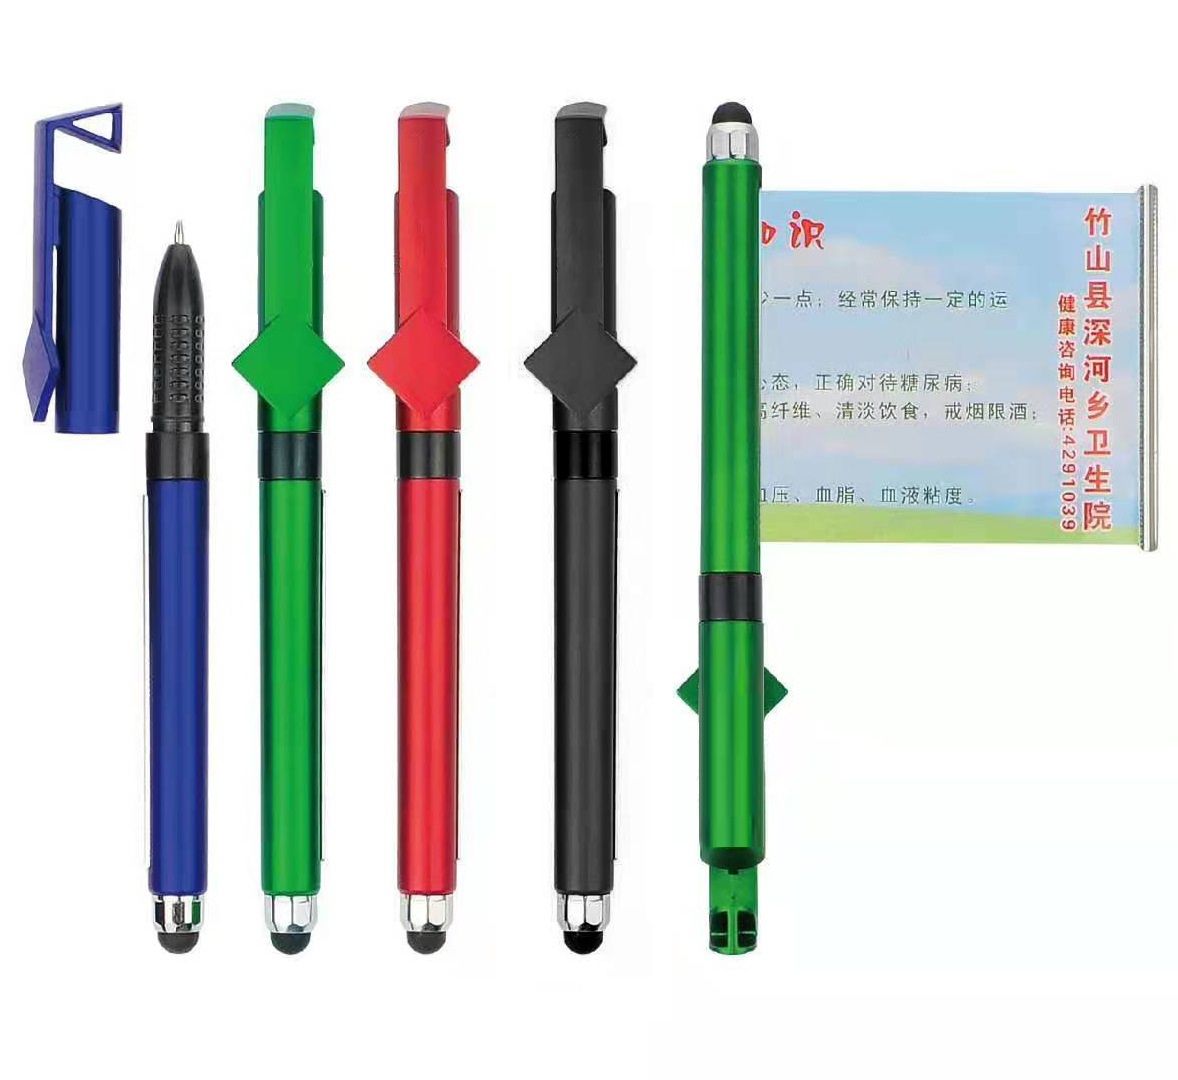 Προσαρμοσμένο πλαστικό στυλό με πανό με βάση τηλεφώνου